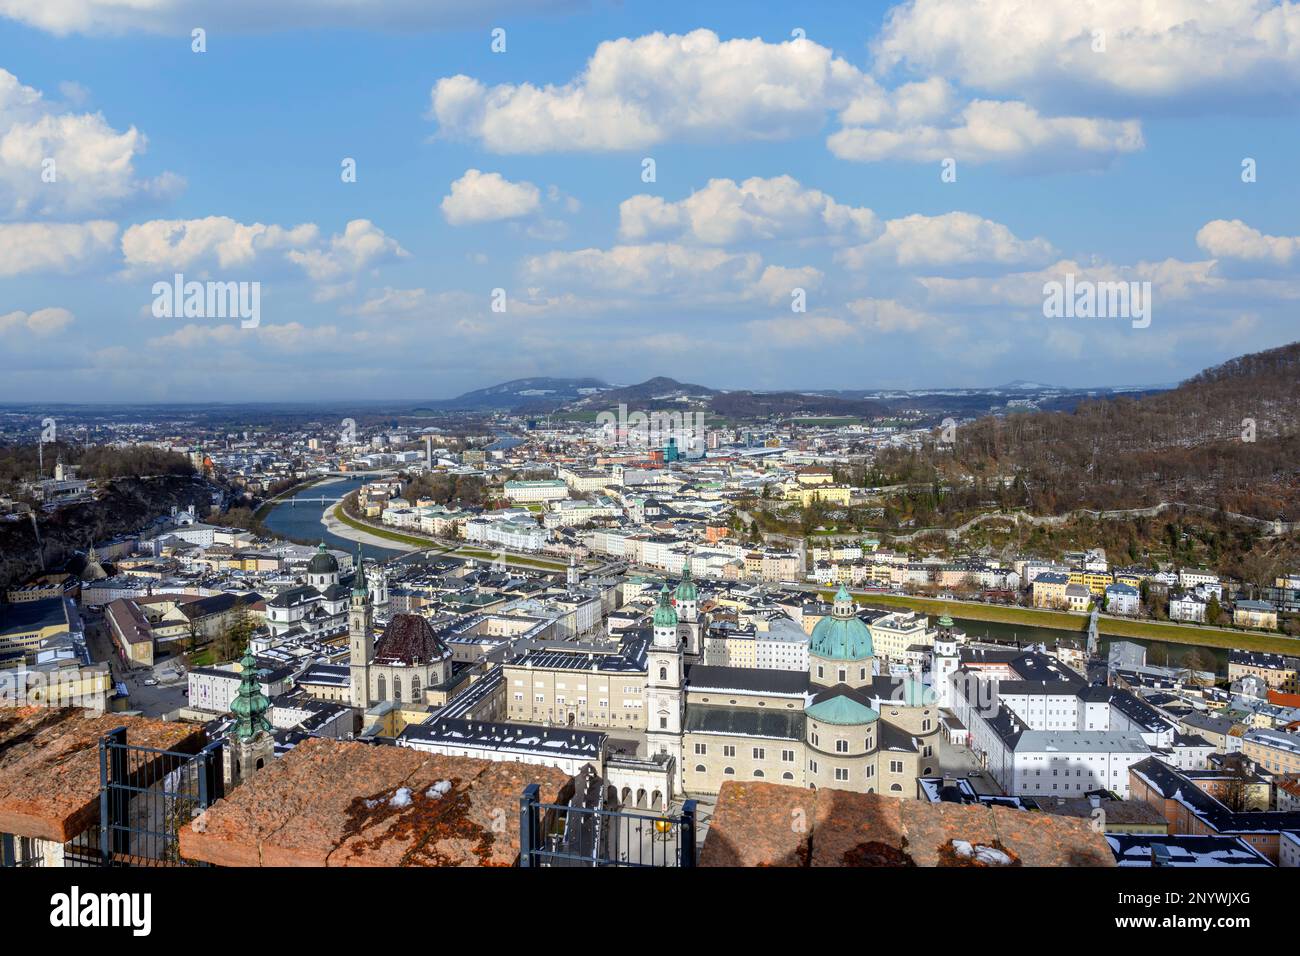 Vue sur la ville depuis la forteresse de Hohensalzburg (Festung Hohensalzburg), Salzbourg, Autriche Banque D'Images